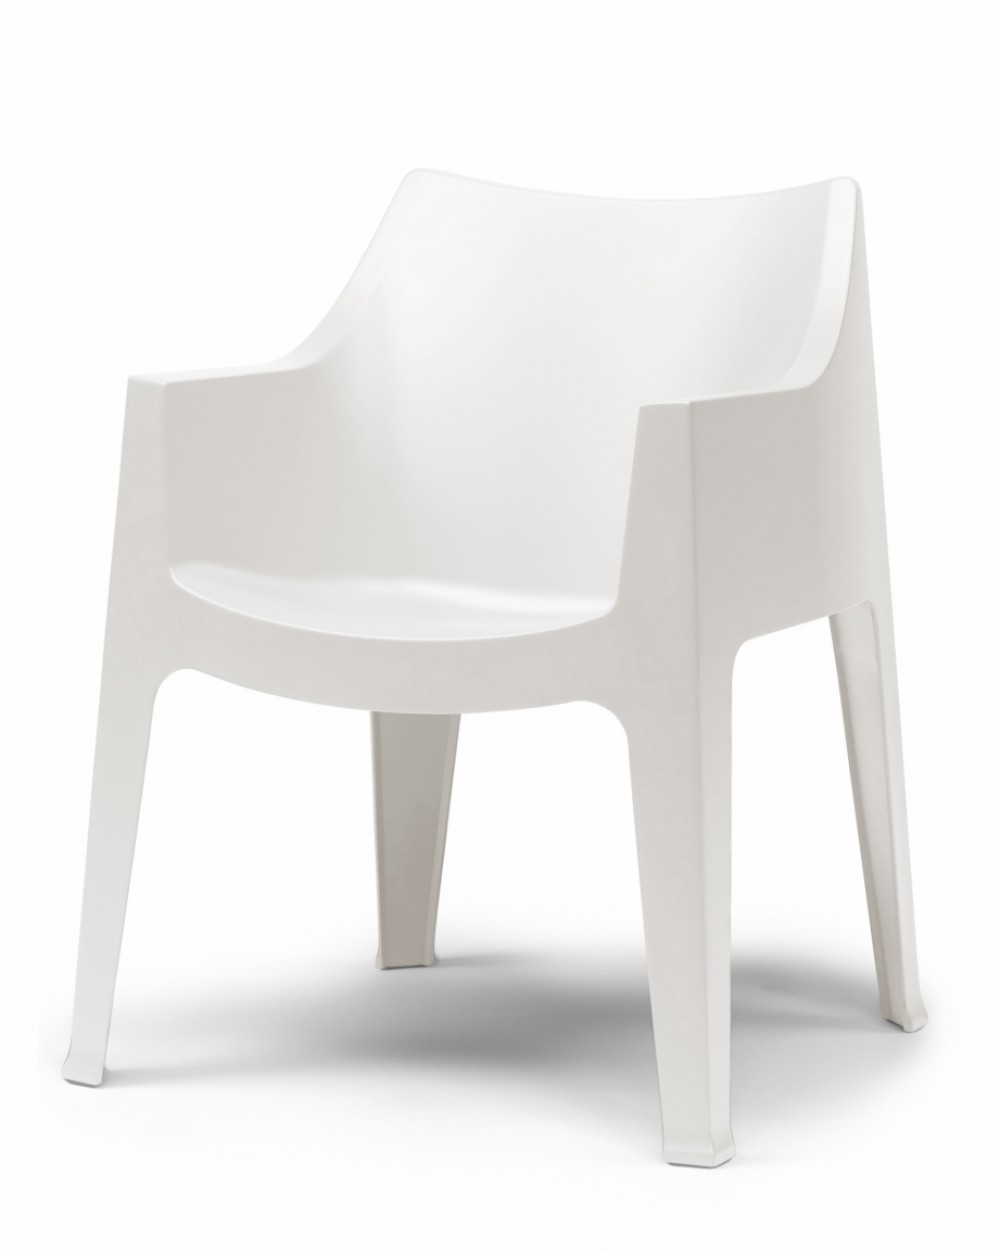 Möbel Outdoor Gartenstuhl Kunststoff, stapelbar, weiß weiß Stuhl